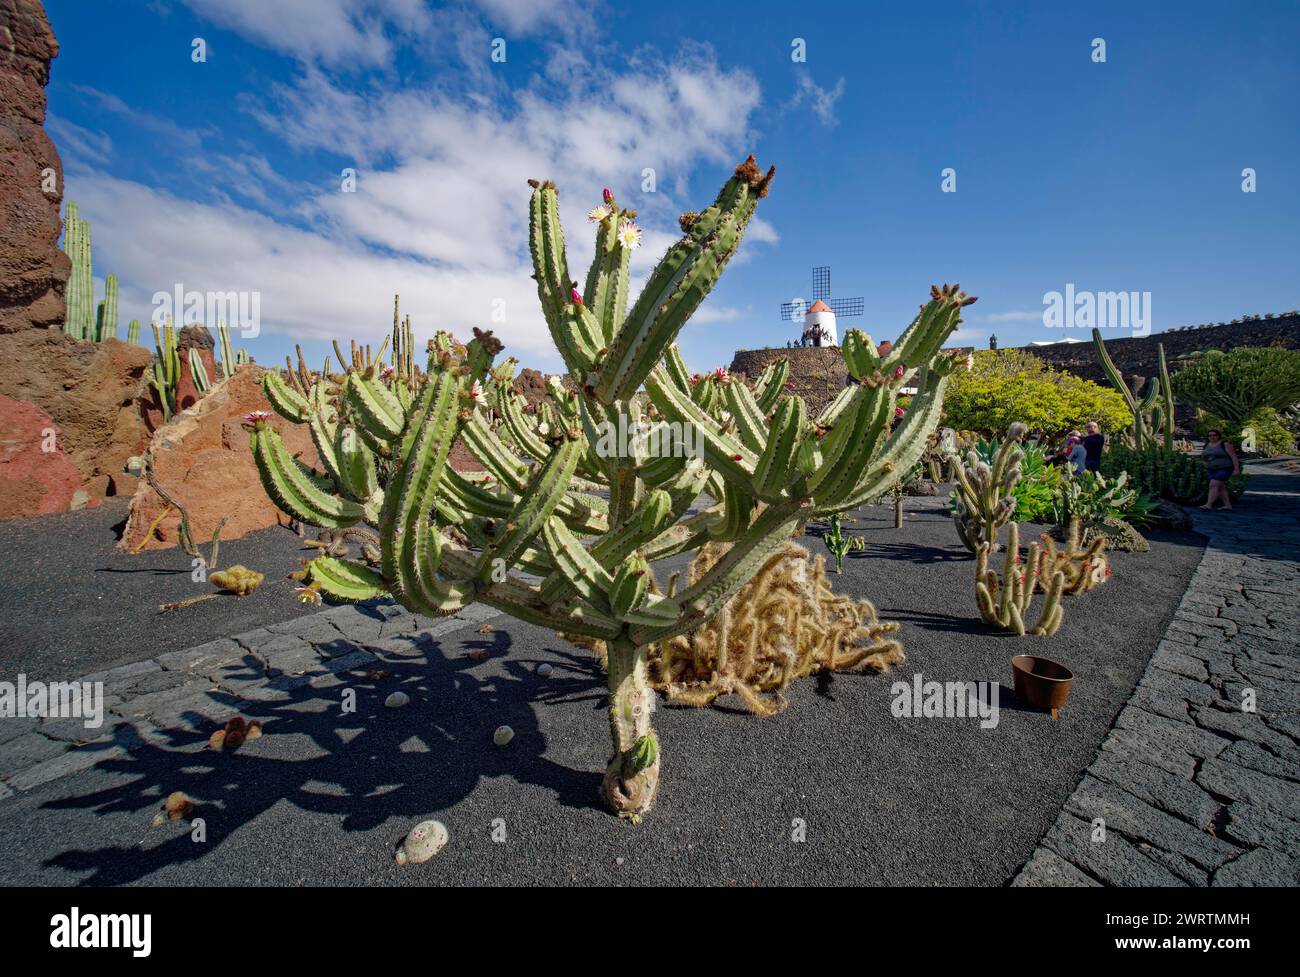 Jardin de cactus, jardin de Cactus, conçu par l'artiste Cesar Manrique, derrière le moulin de gofio restauré, Lanzarote, îles Canaries, îles Canaries Banque D'Images